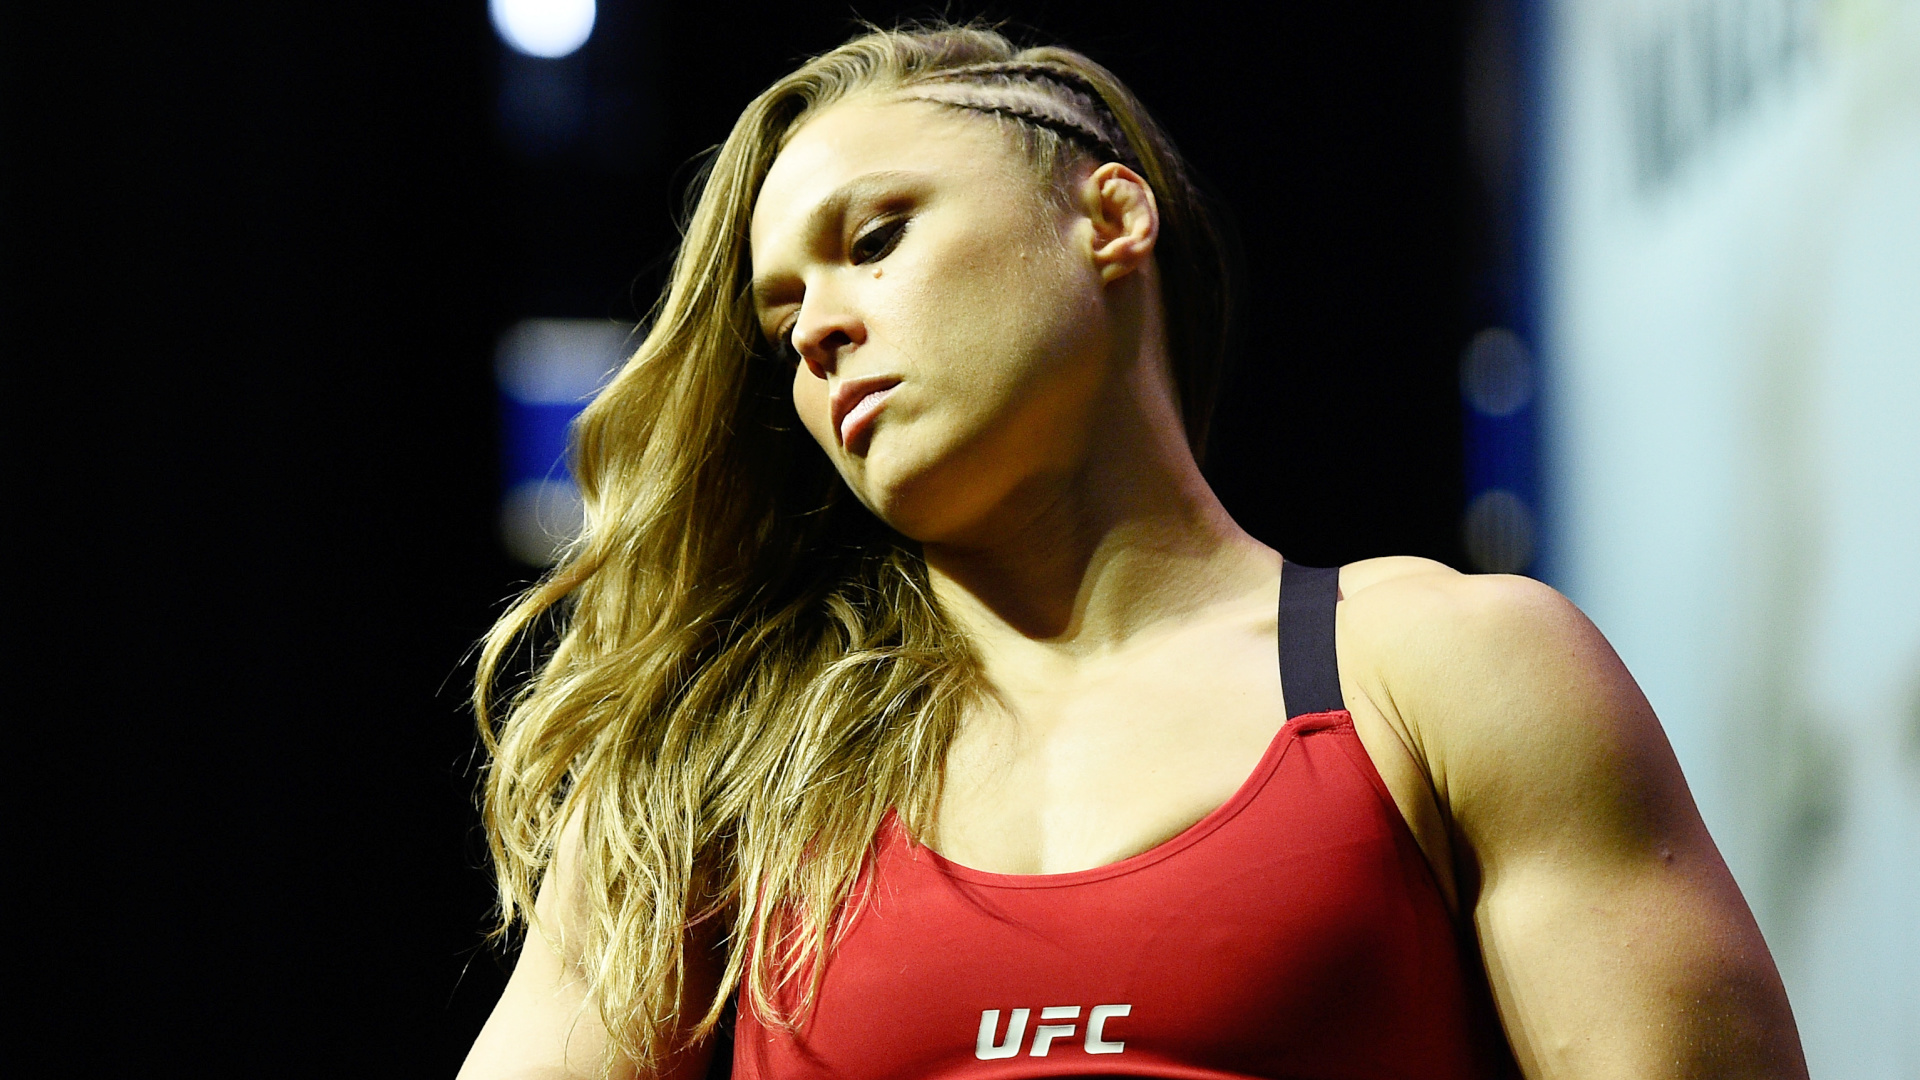 Conseguenze di una vita dedicata a combattere: il futuro allarmante di Ronda Rousey